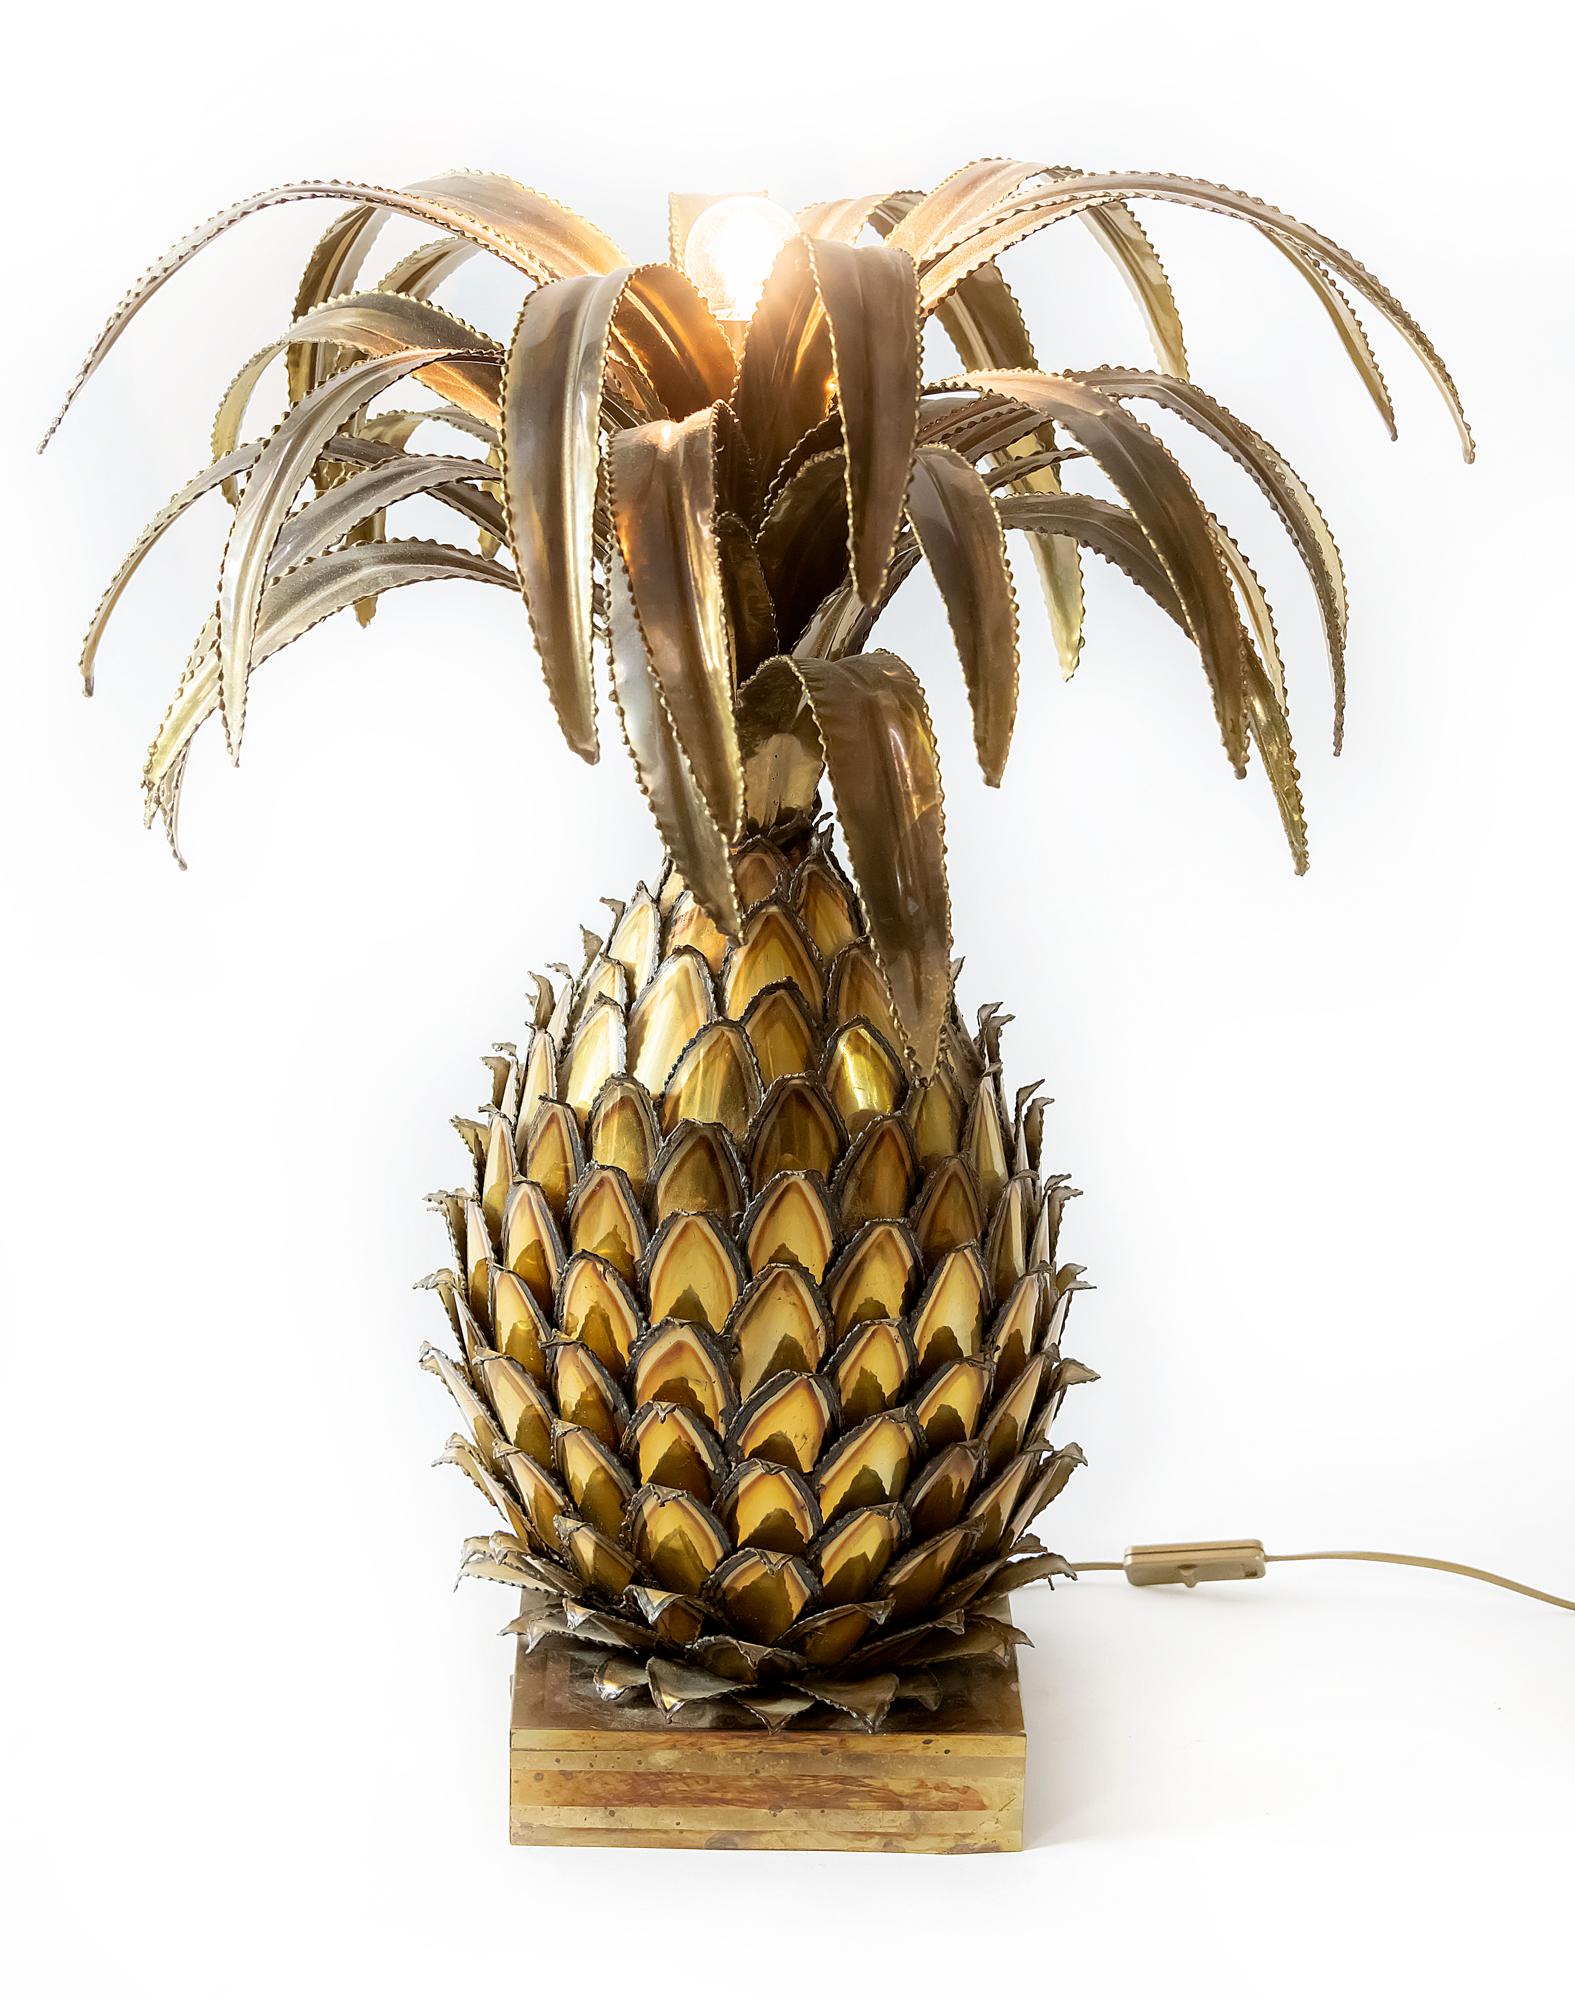 Vieille lampe de table française en laiton décorée comme un ananas par Maison Jansen. 
La lampe comprend une ampoule E27